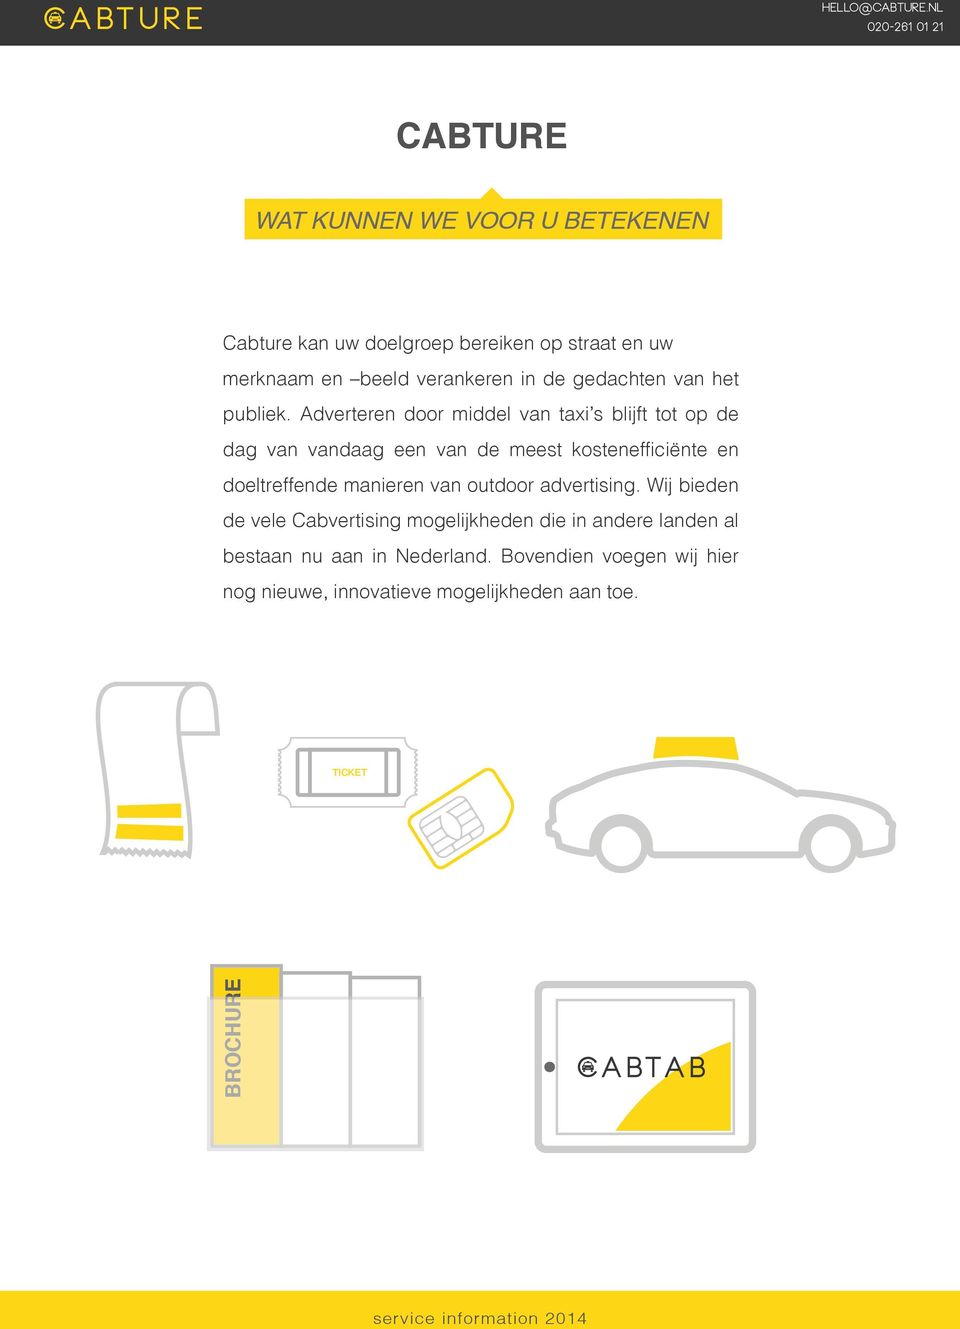 Adverteren door middel van taxi s blijft tot op de dag van vandaag een van de meest kostenefficiënte en doeltreffende